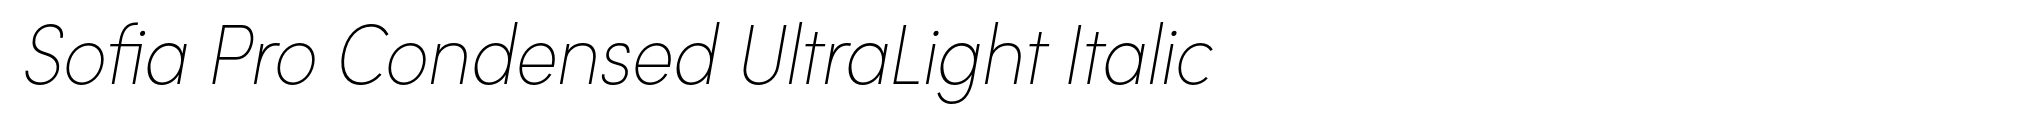 Sofia Pro Condensed UltraLight Italic image